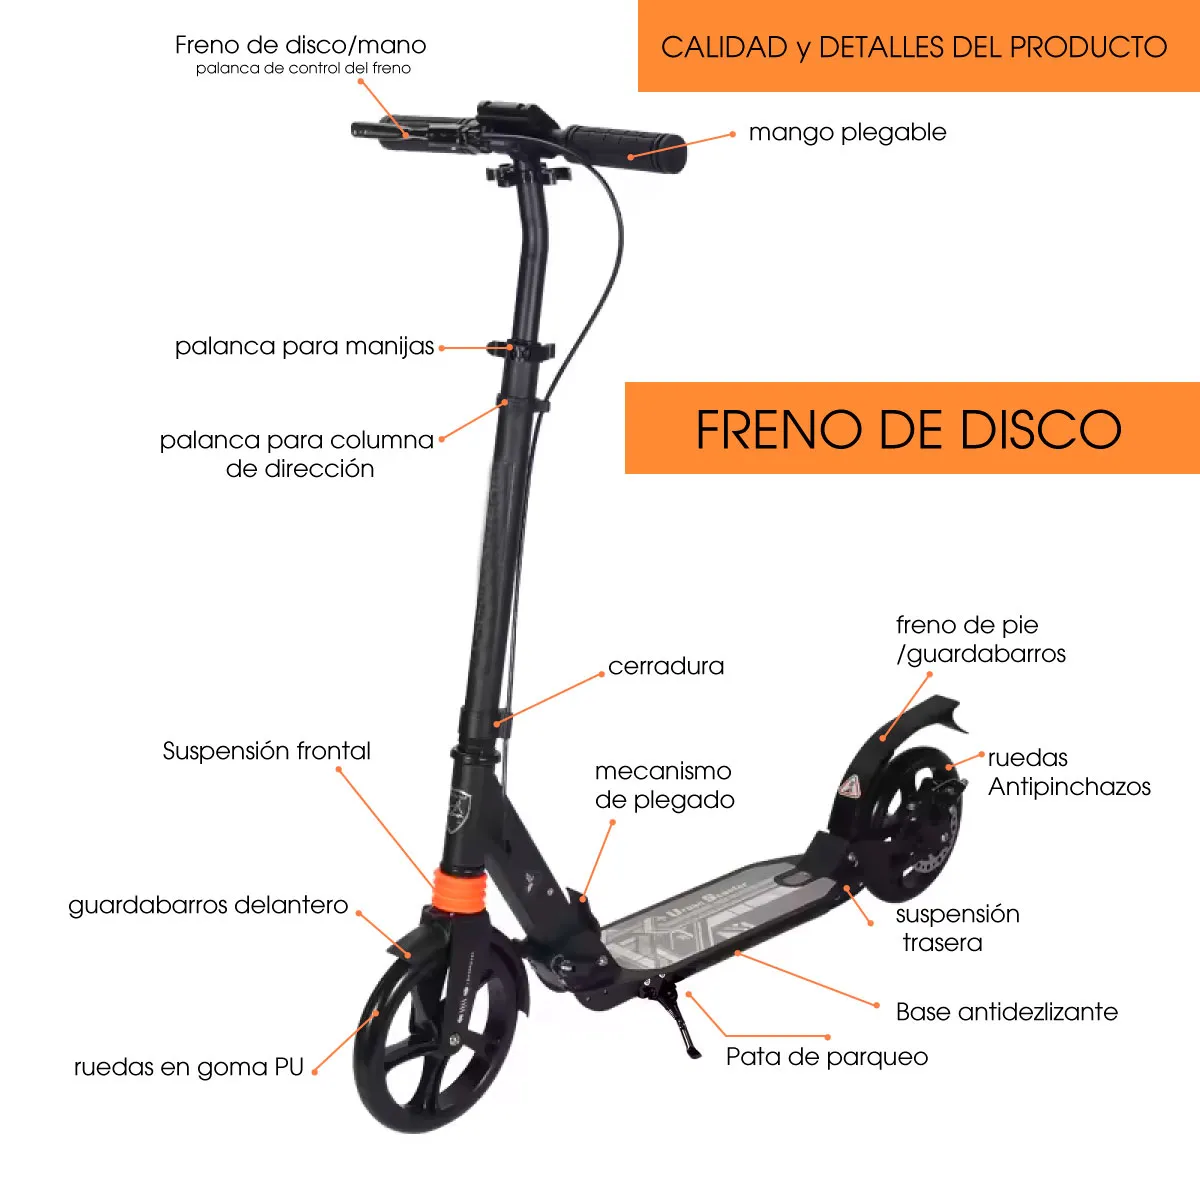 Patineta Urbana Mecánica para adolescentes con ruedas de 20cm, capacidad de 100 kilos Con freno de disco.